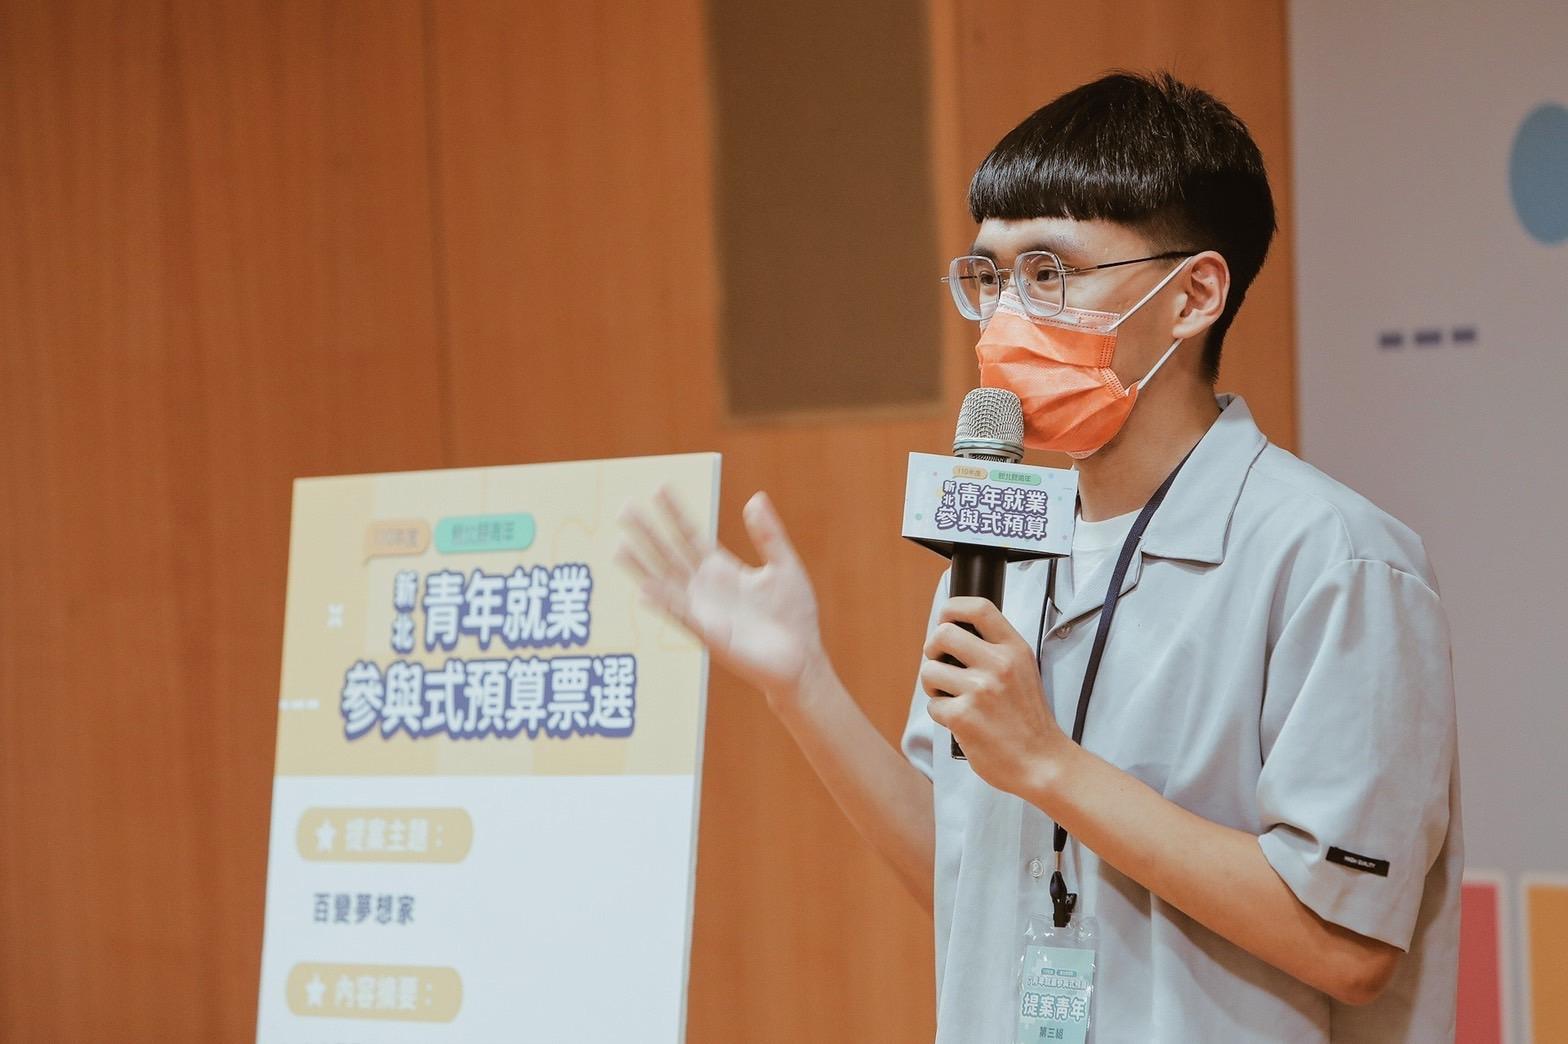 政大公共行政學系學生陳彥宇，針對提案主題「百變夢想家」進行說明，將在新北vote進行